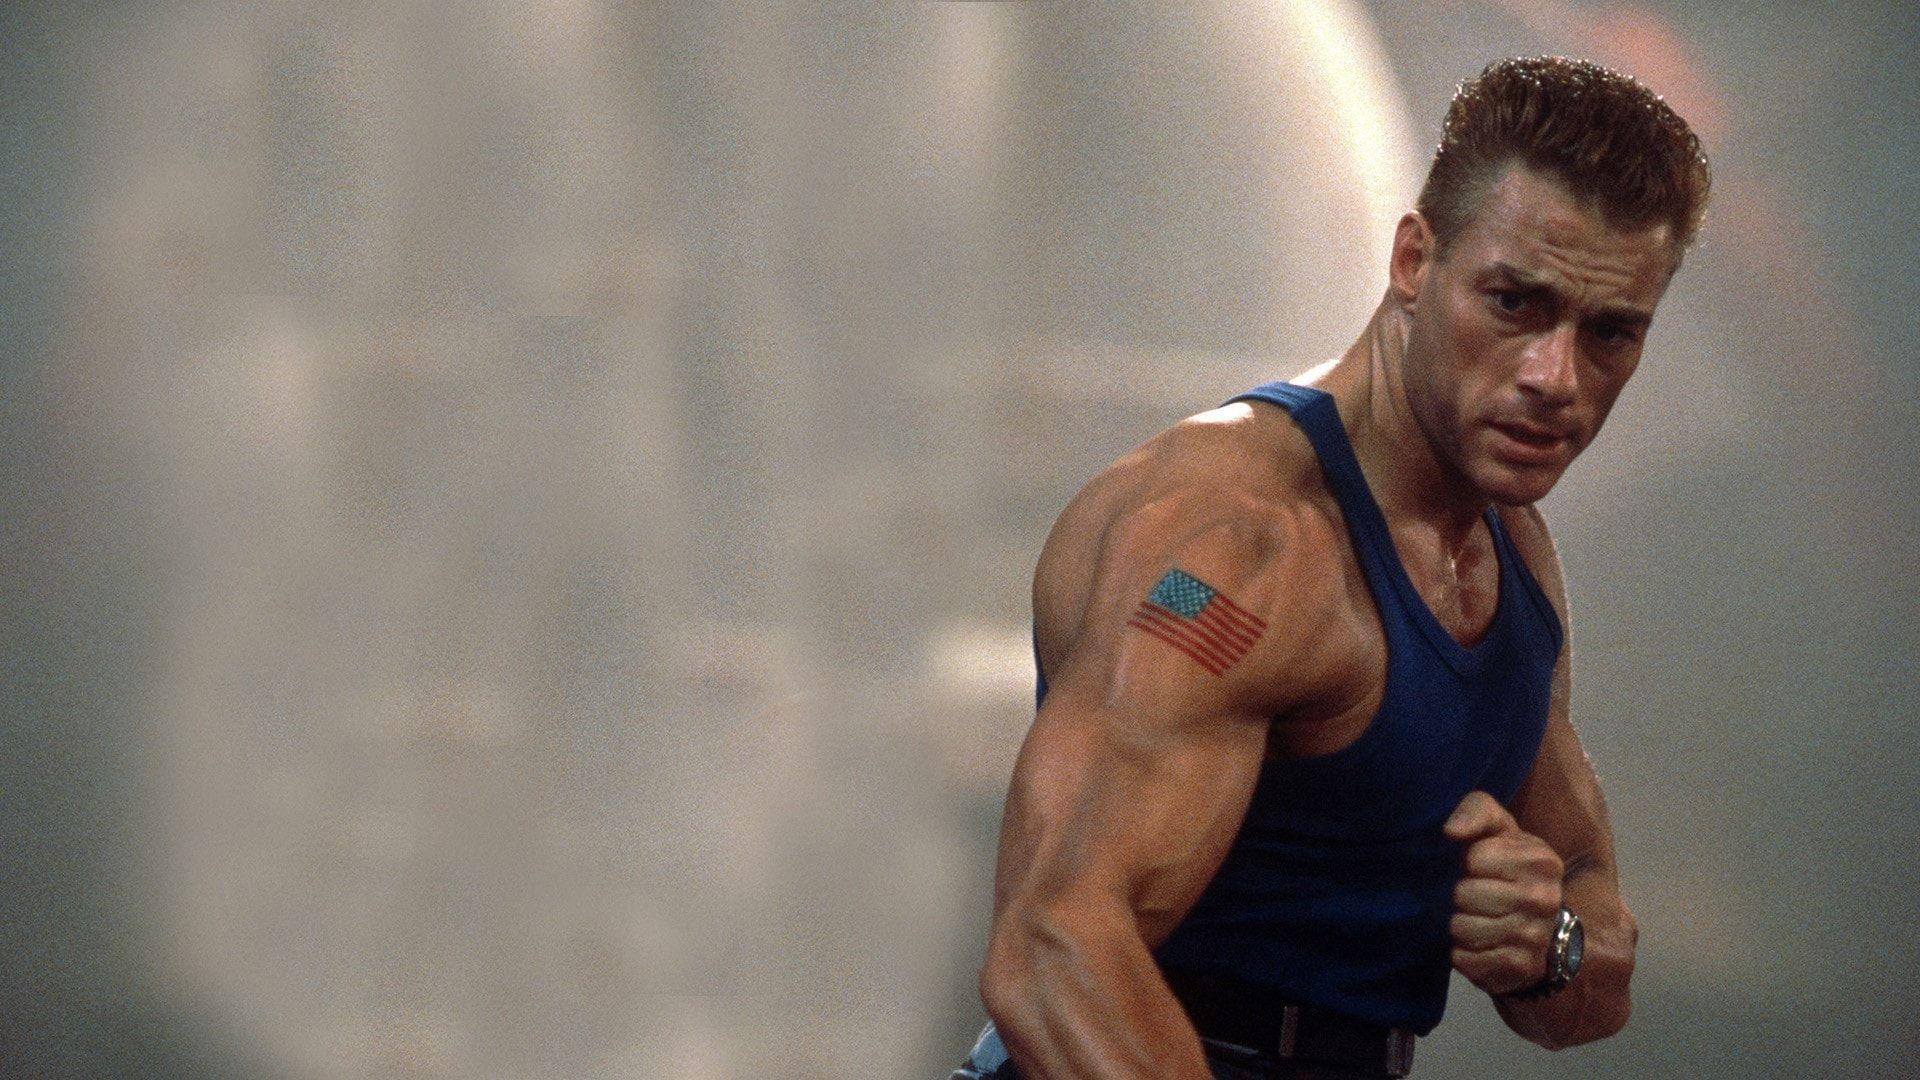 Jean-Claude Van Damme, Muscles of steel, Explosive stunts, Iconic action, 1920x1080 Full HD Desktop